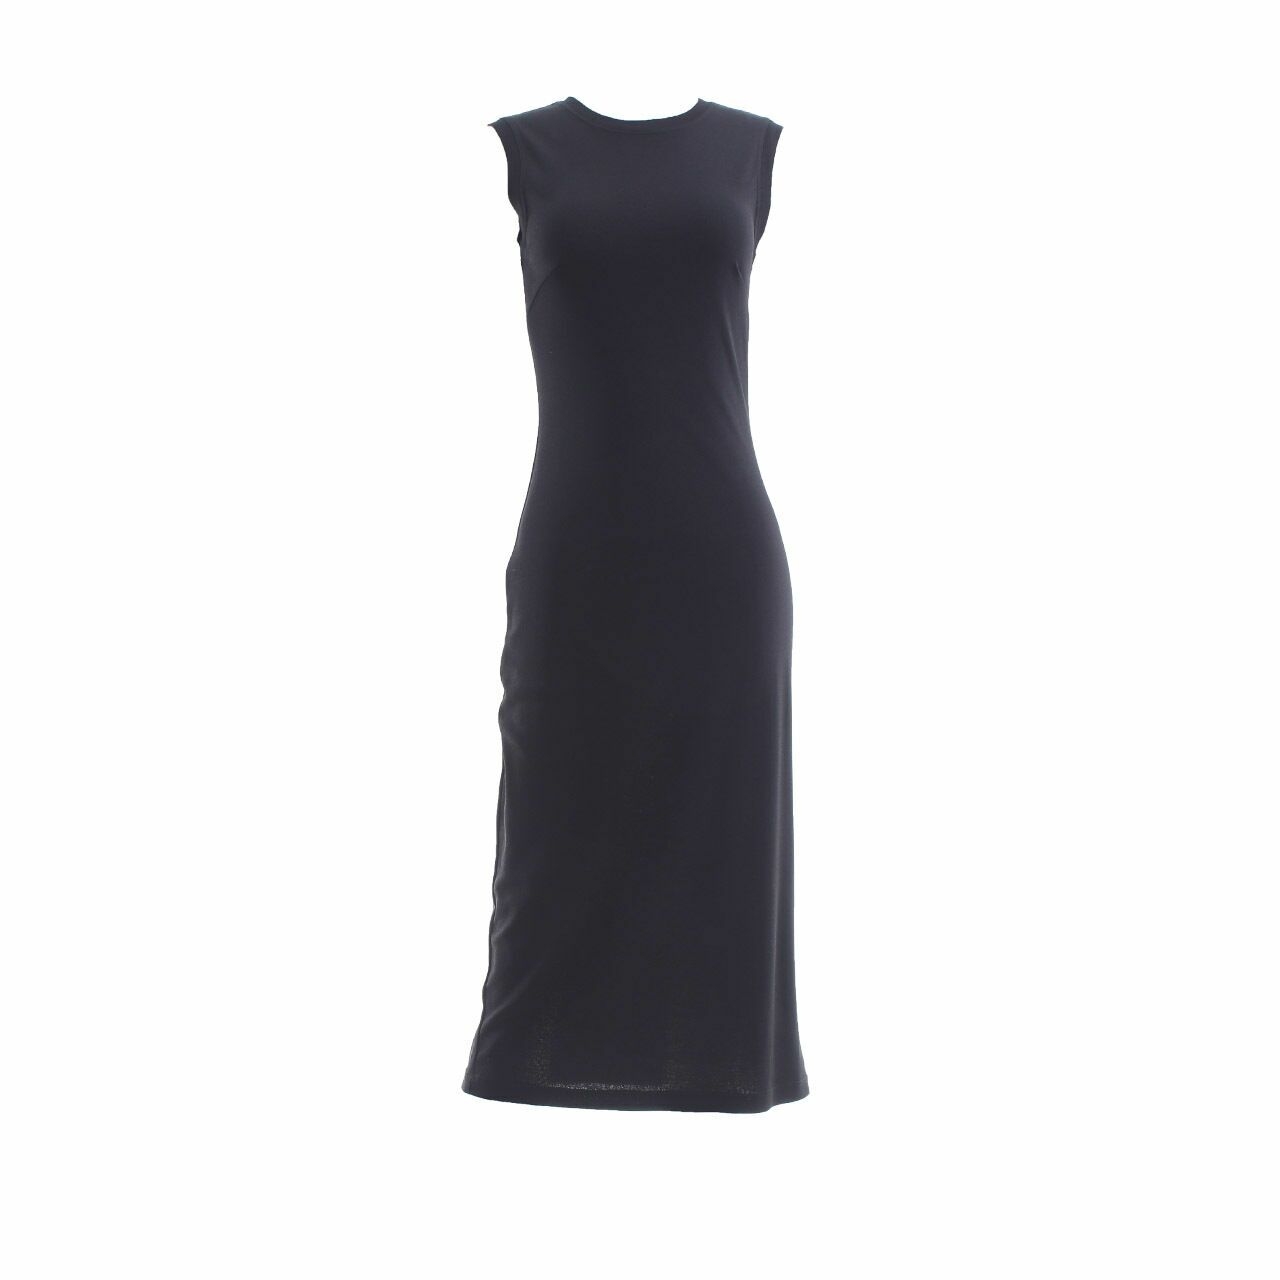 REVIEW Australia Black Midi Dress